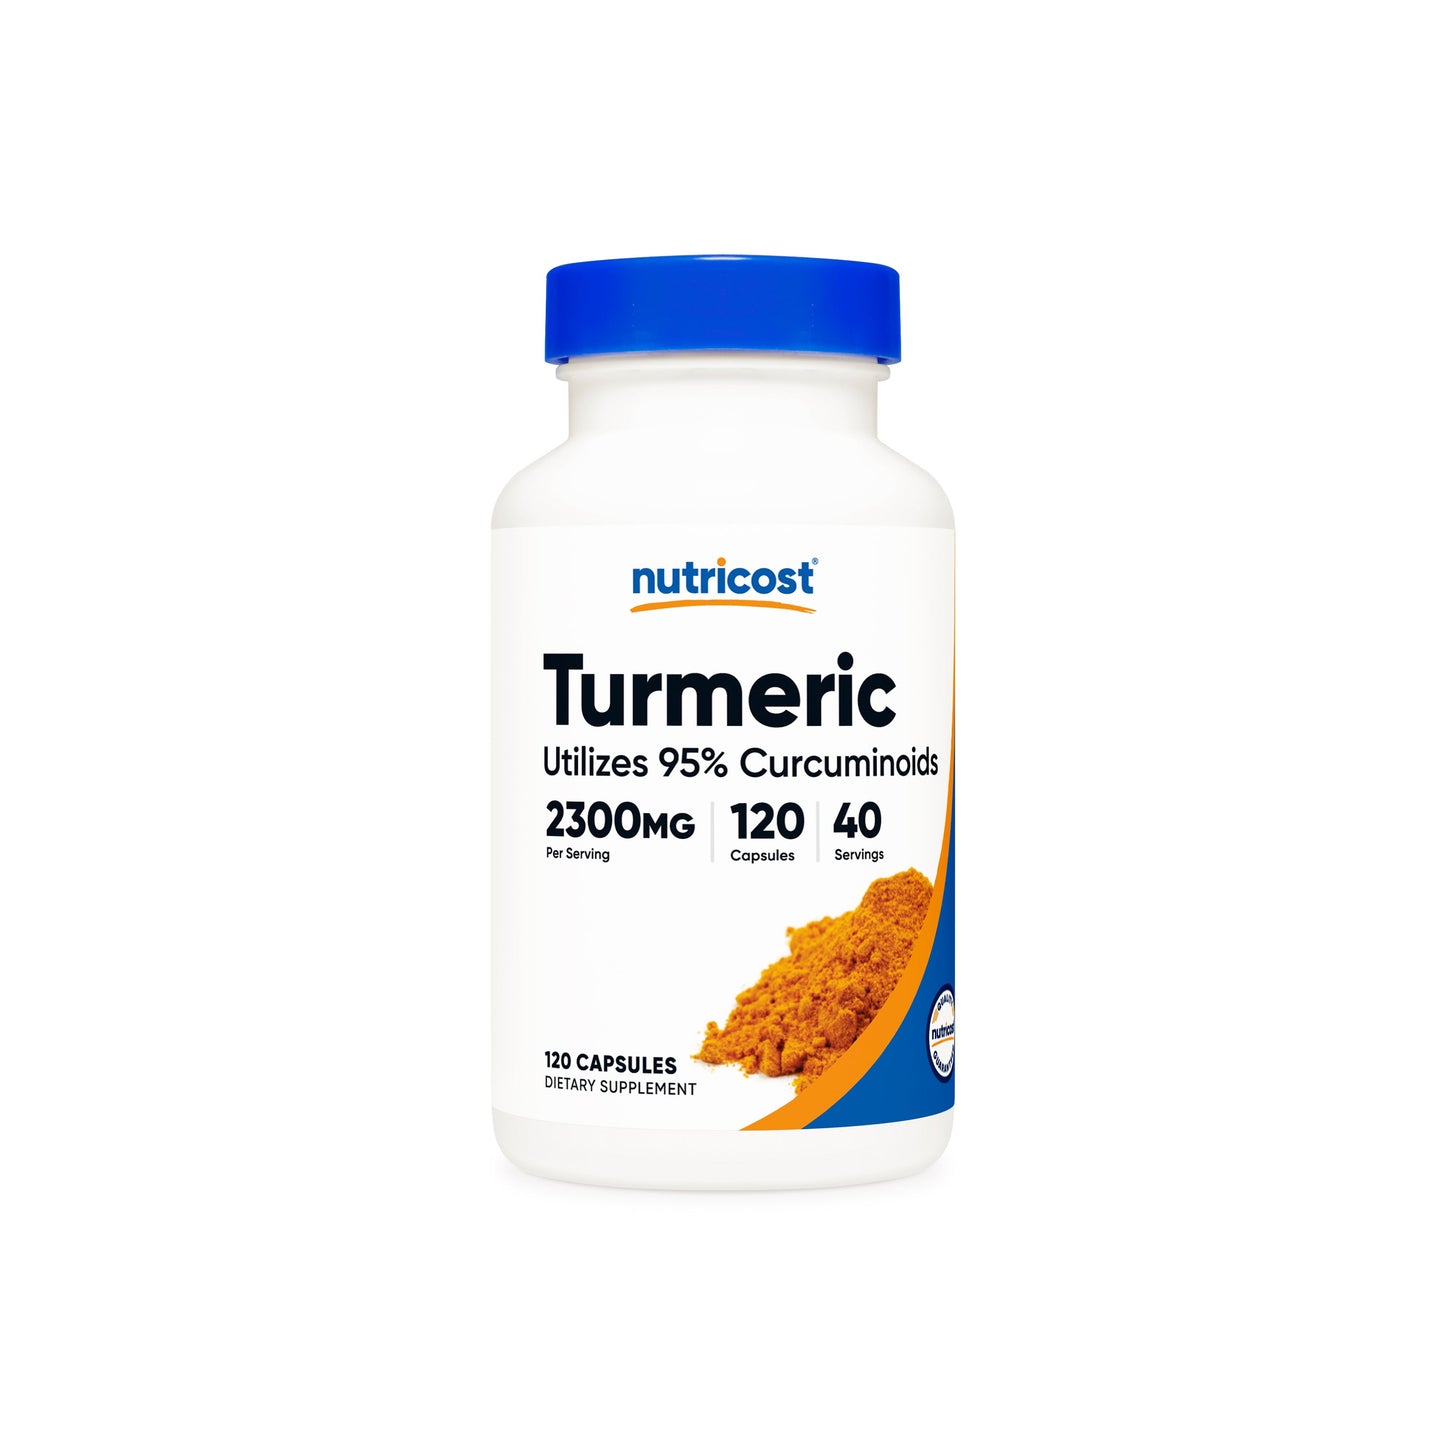 Nutricost Turmeric Capsules